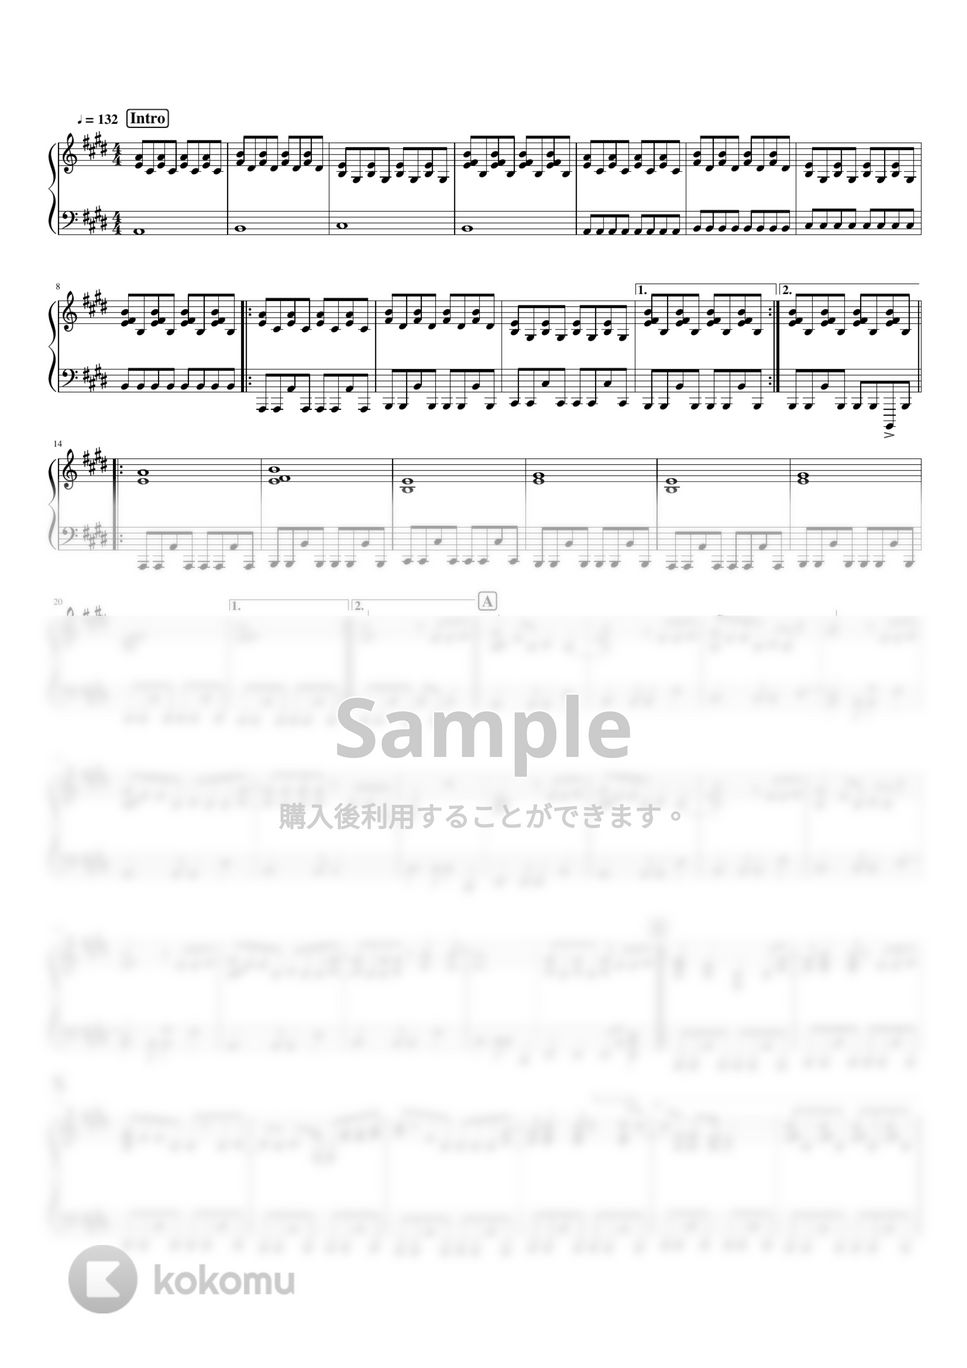 羊文学 - 1999 by pianomikan